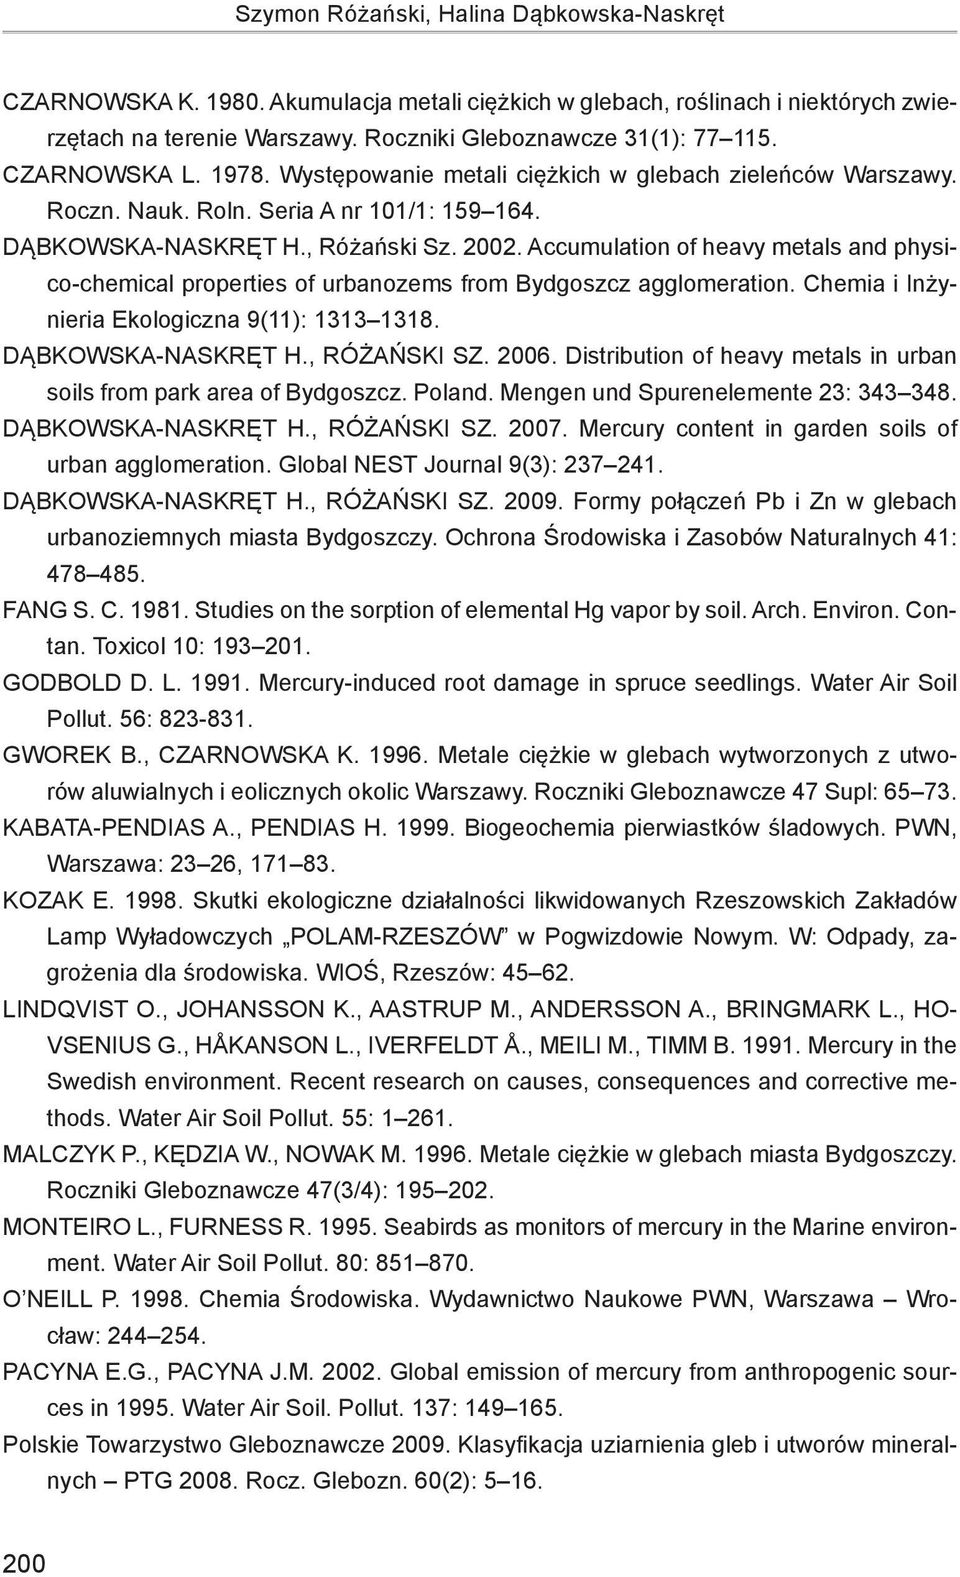 Accumulation of heavy metals and physico-chemical properties of urbanozems from Bydgoszcz agglomeration. Chemia i Inżynieria Ekologiczna 9(11): 1313 1318. Dąbkowska-Naskręt H., Różański Sz. 2006.